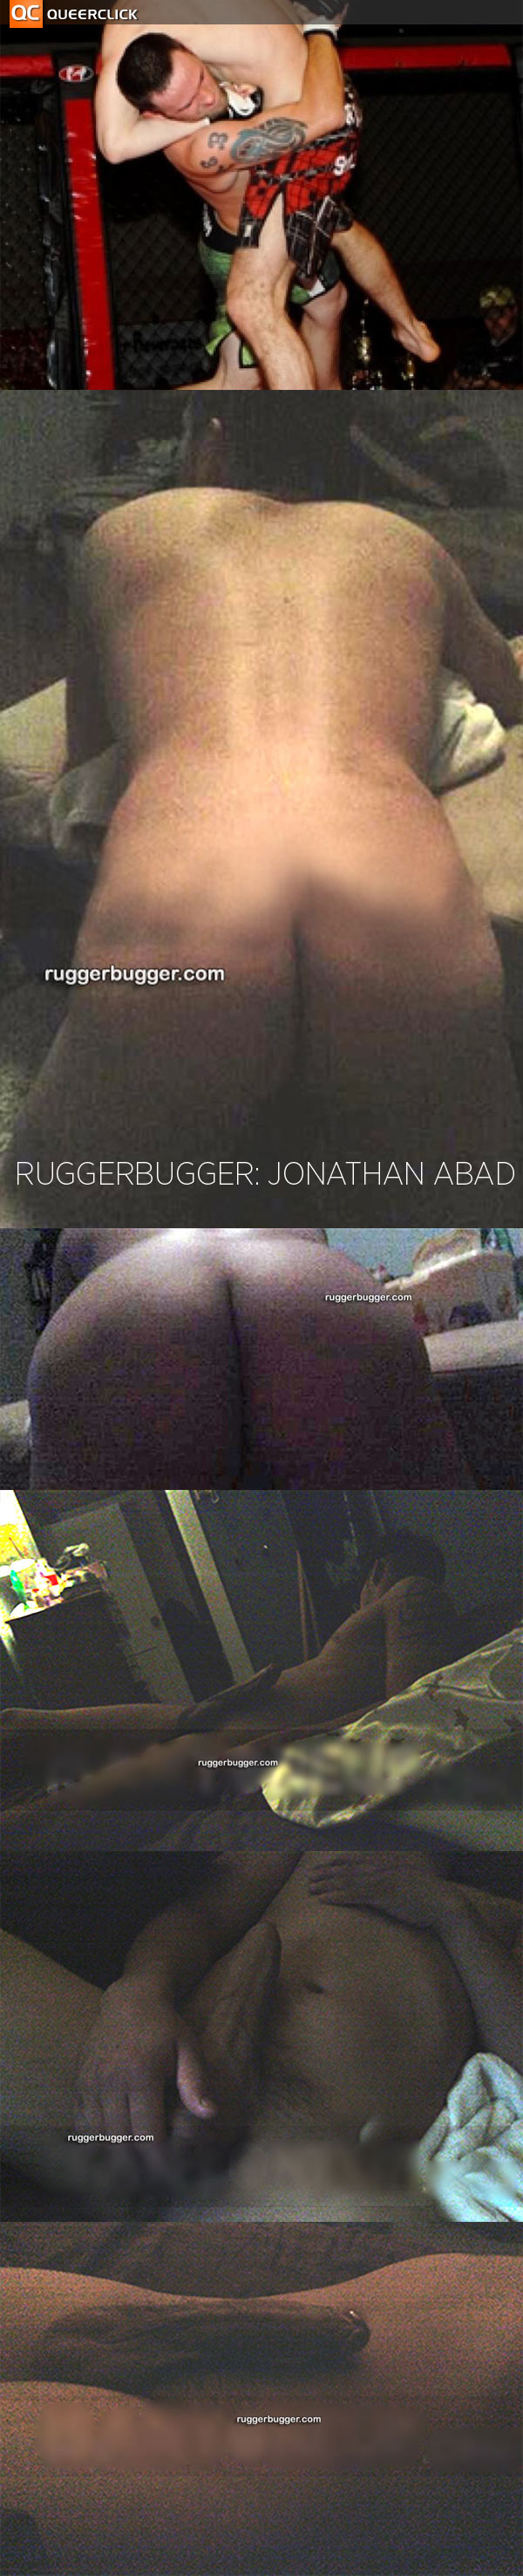 Jonathan Abad at Ruggerbugger